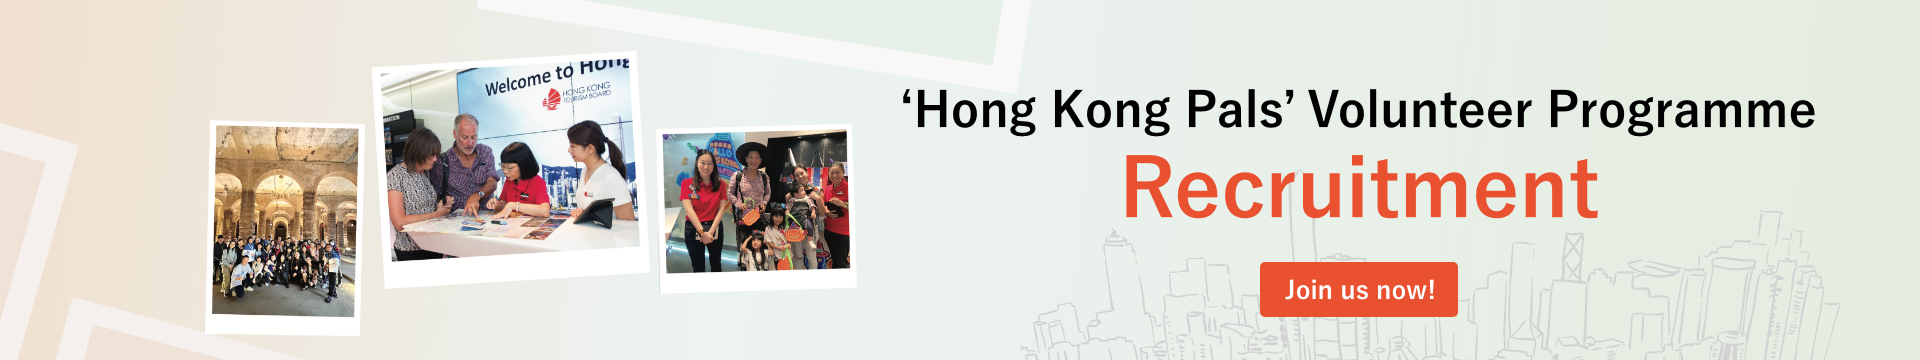 hong kong place to visit